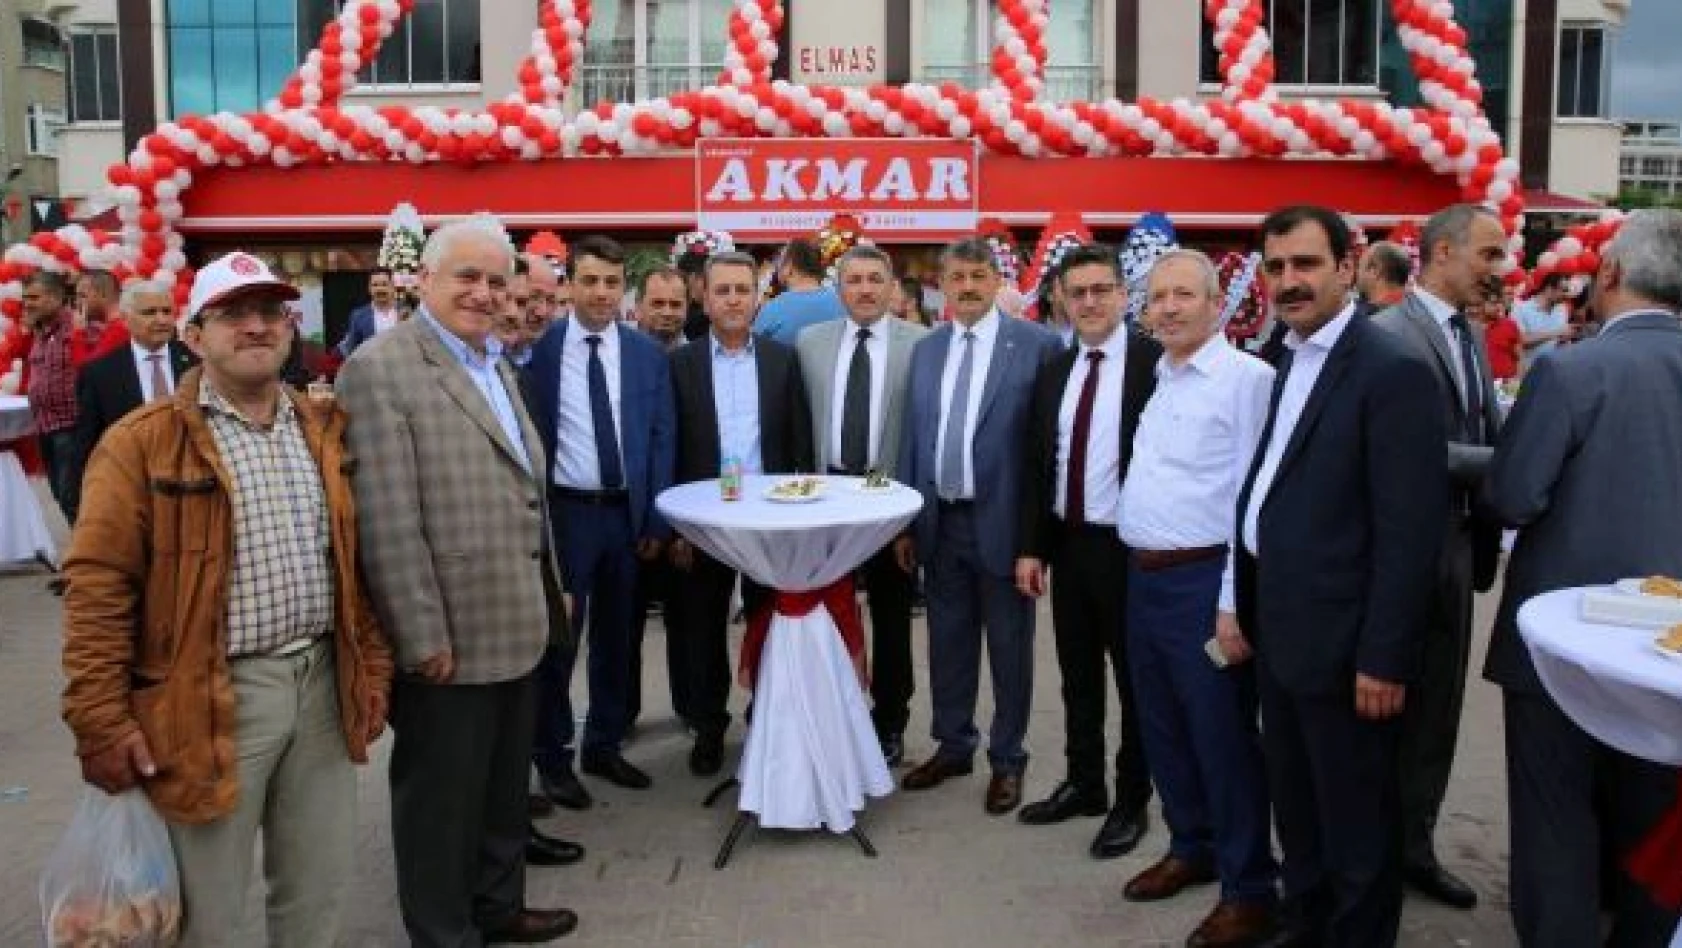 Akmazlar Akmar Market açıldı